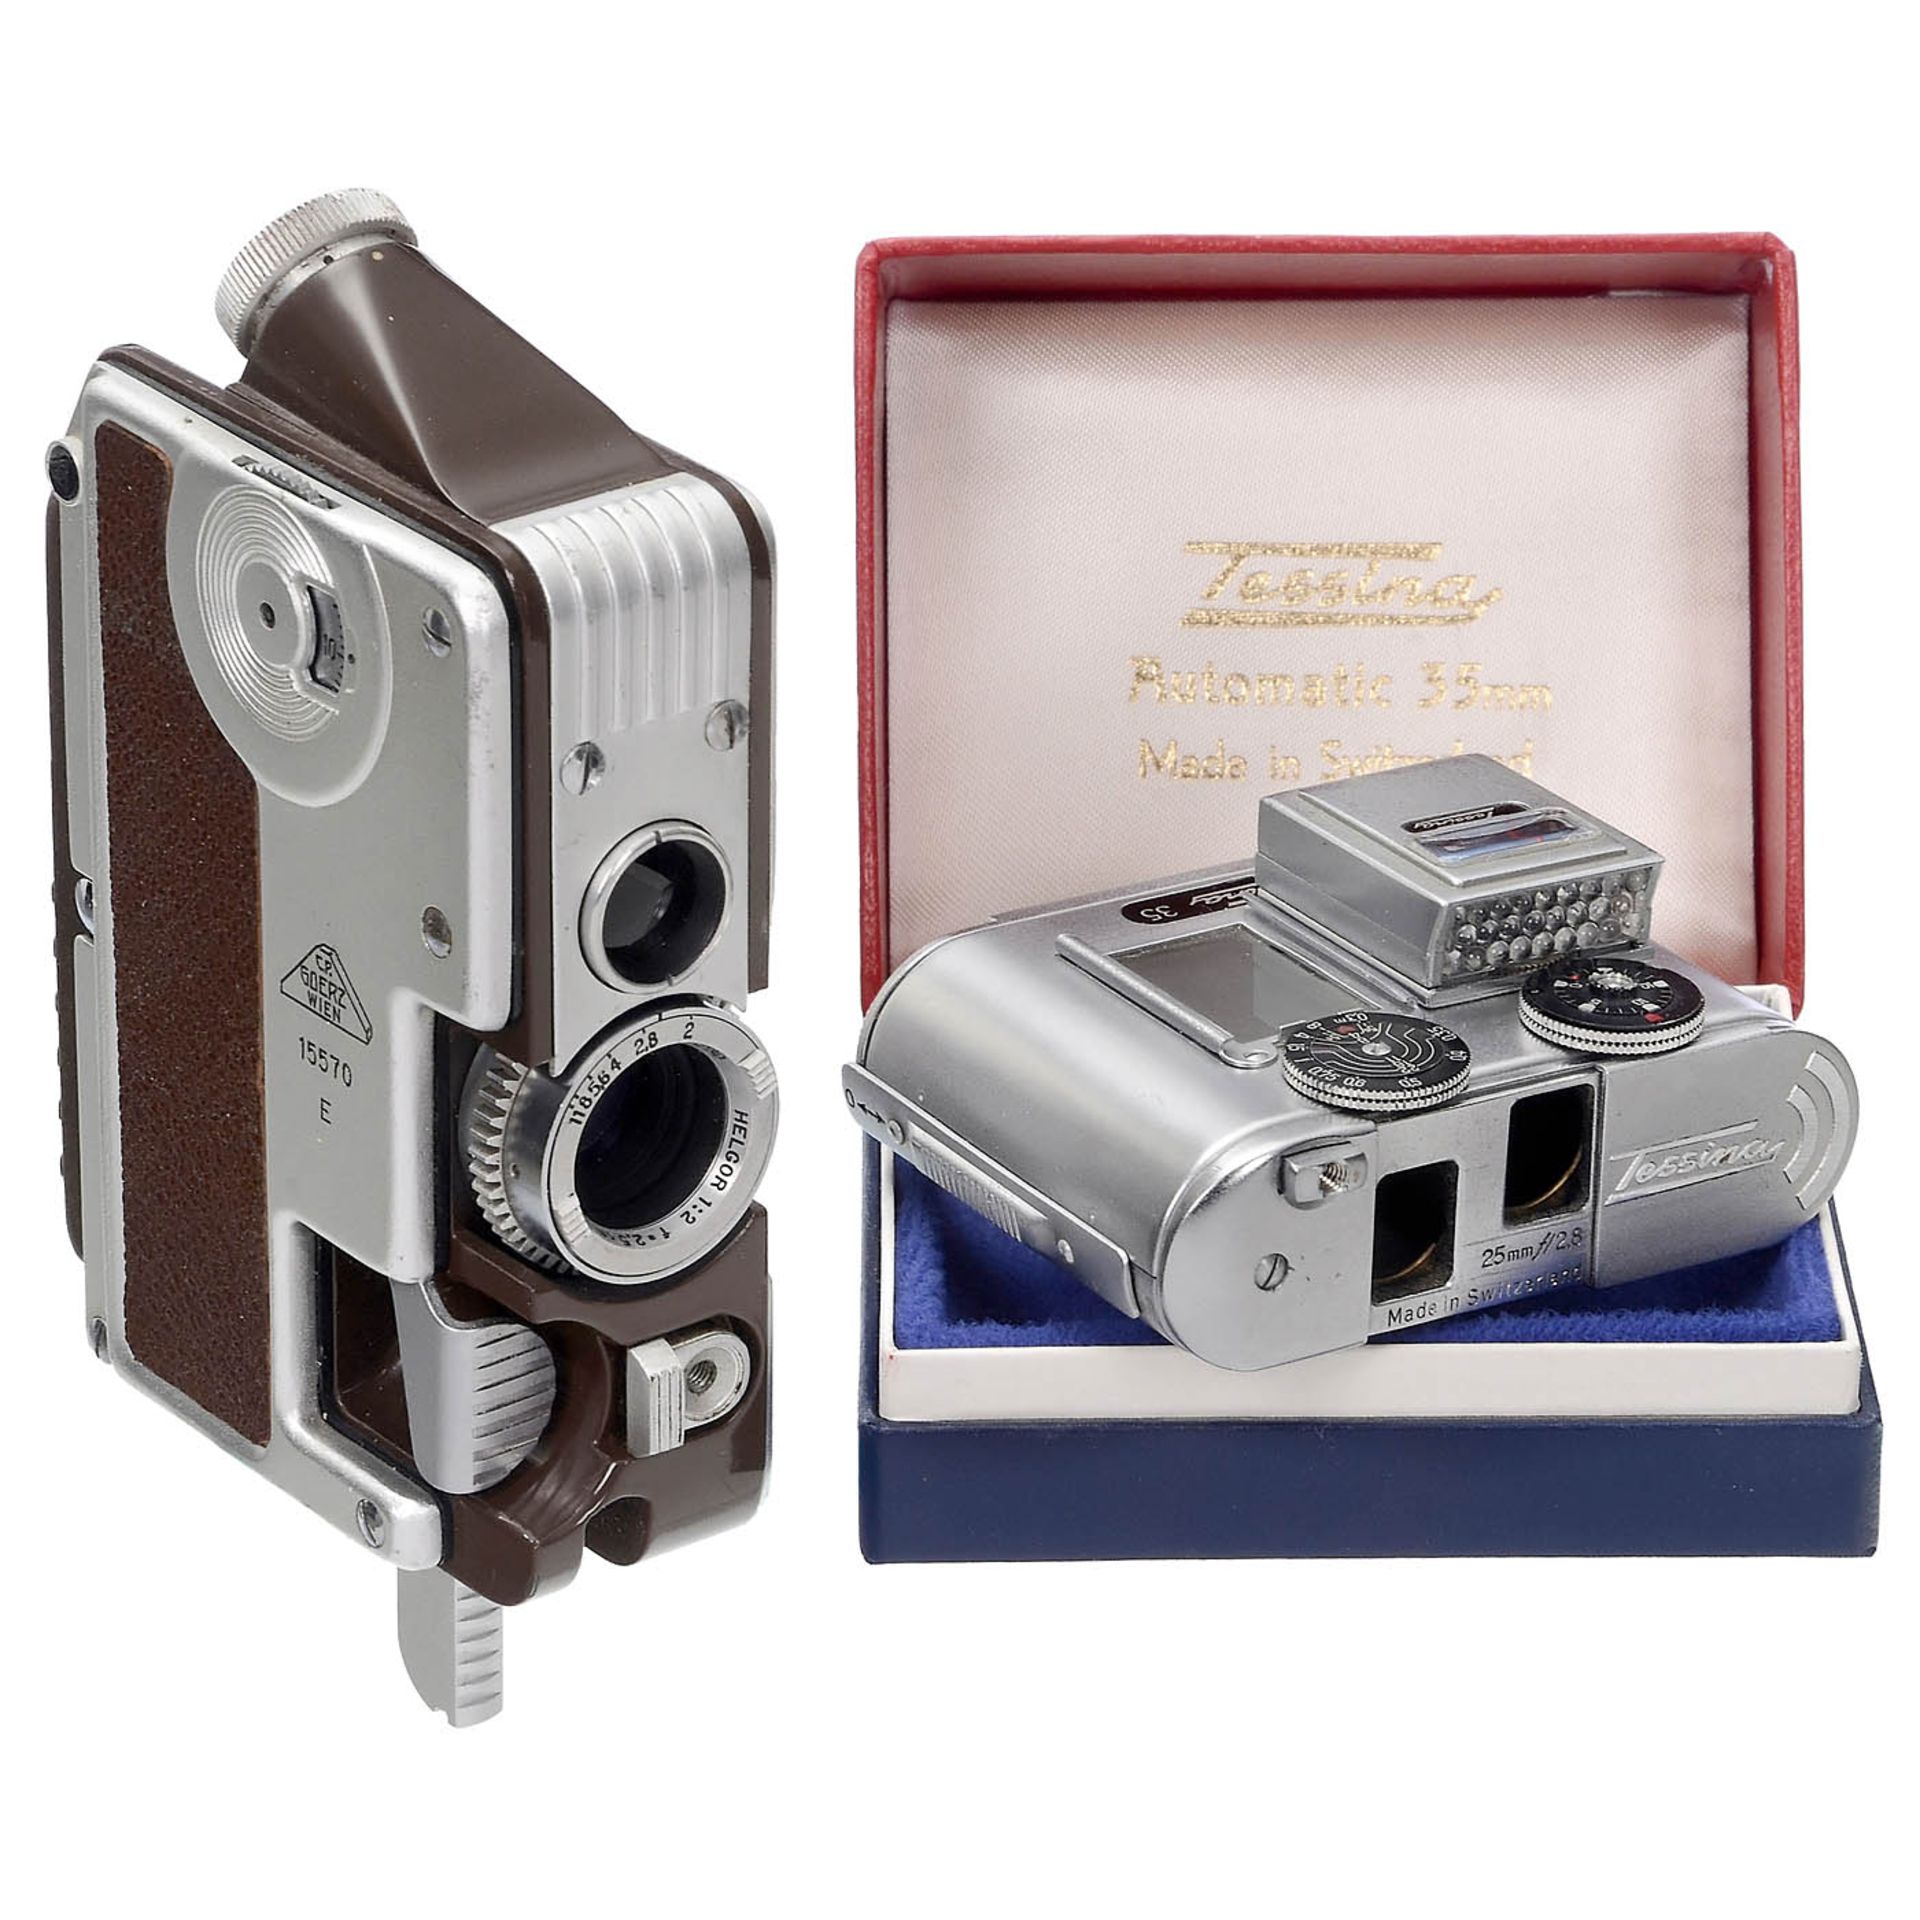 2 Double-Lens Miniature Cameras, c. 1960